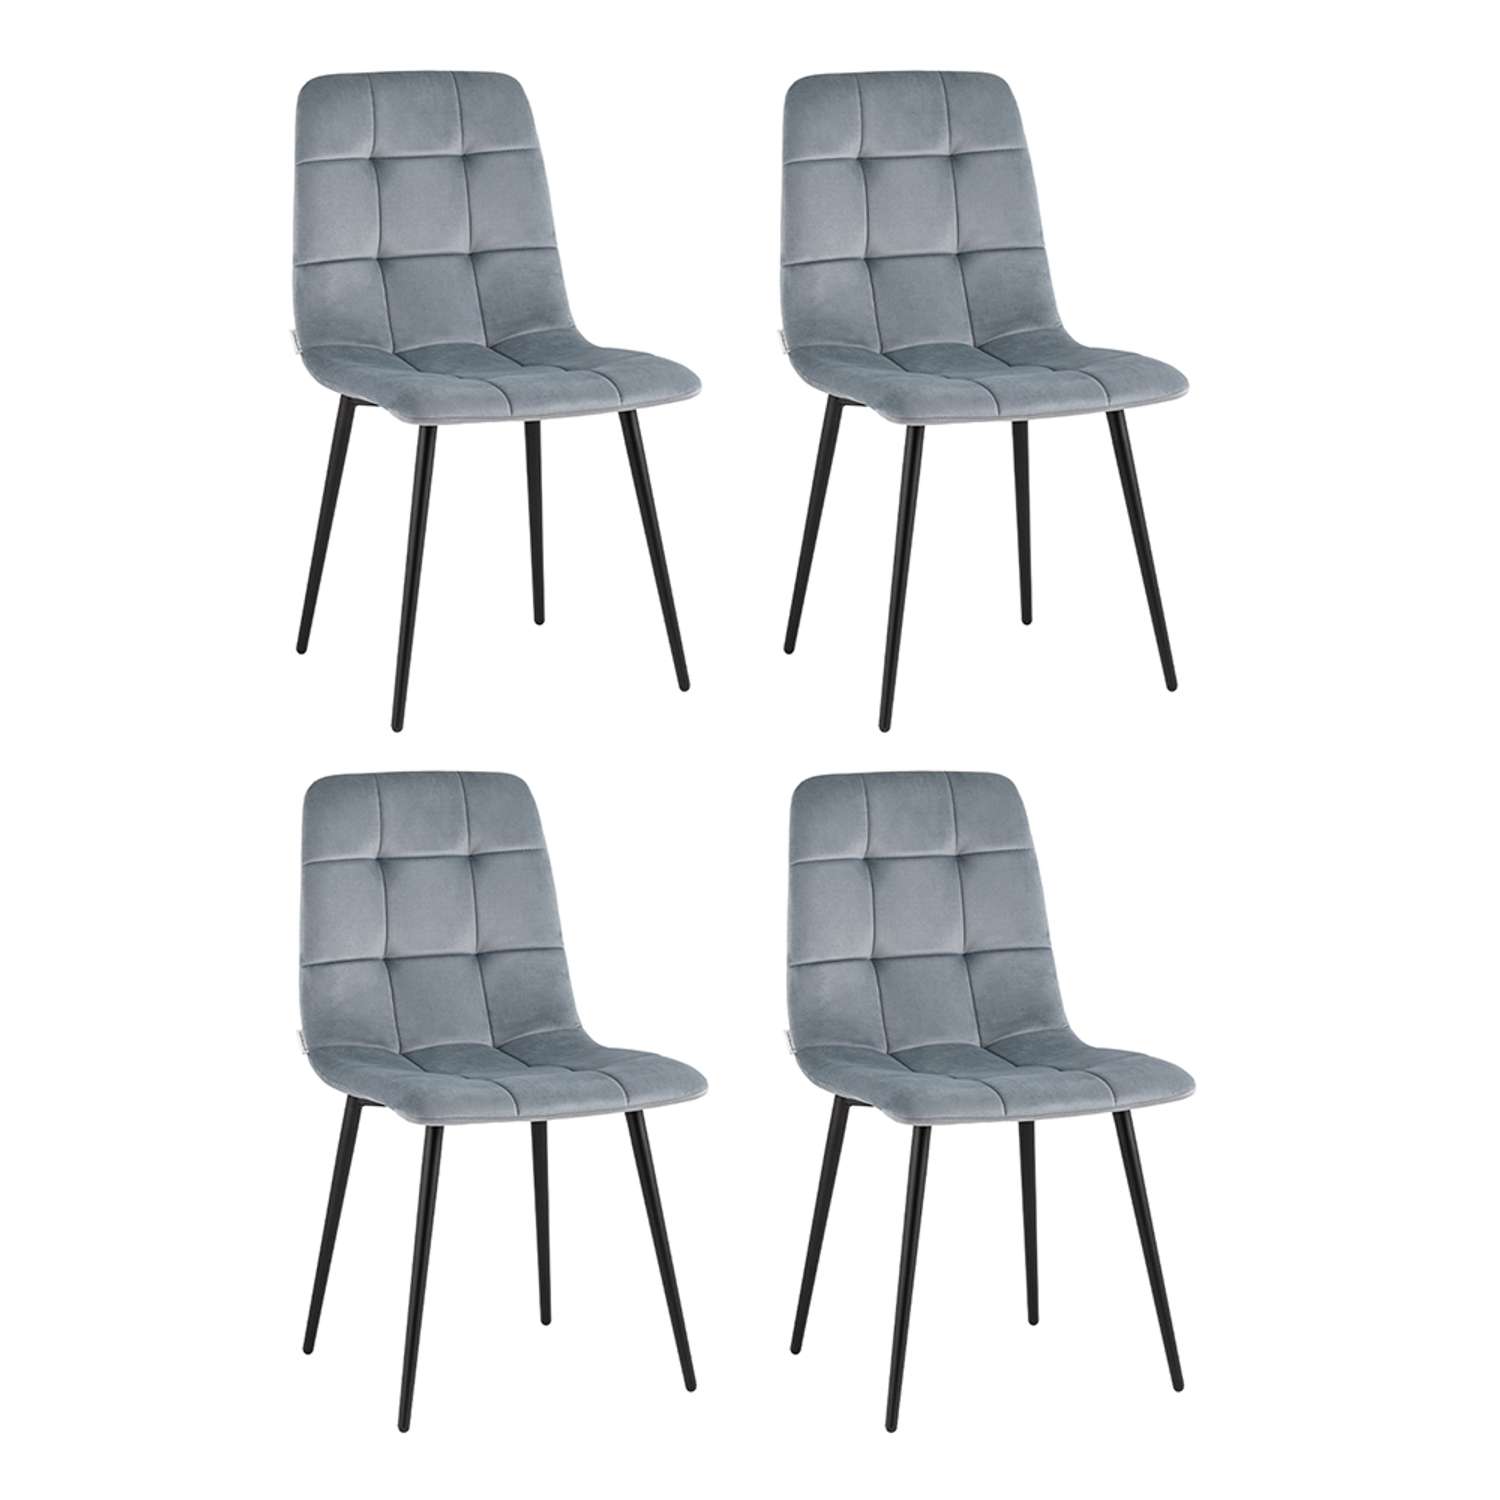 Комплект стульев Stool Group Одди велюр серый 4 шт - фото 2